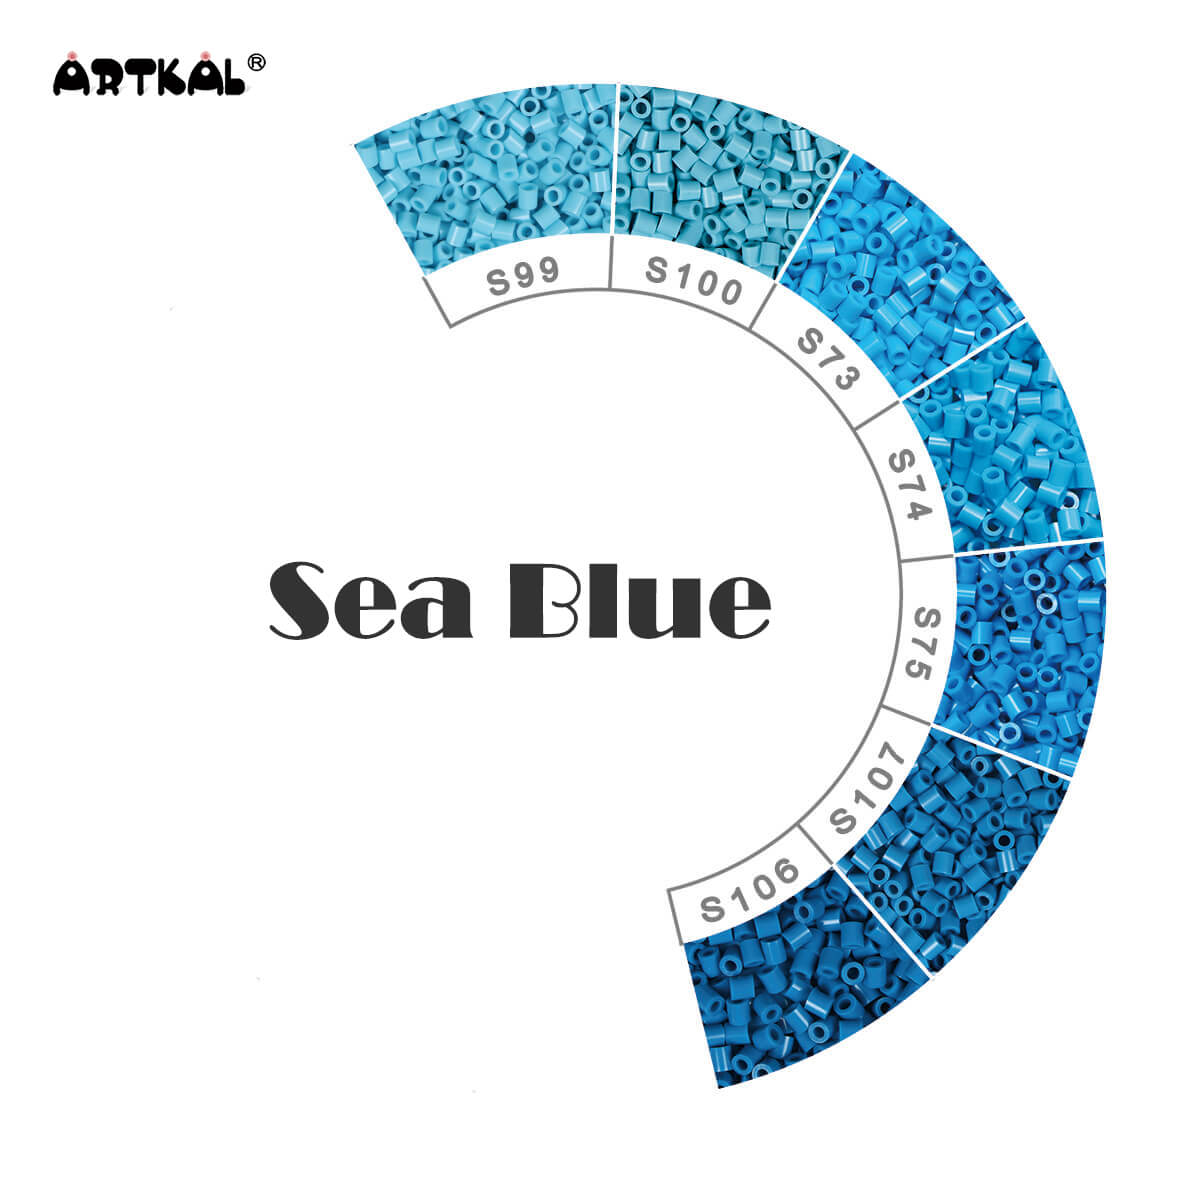 Sea Blue-Midi 1000 perles paquet unique